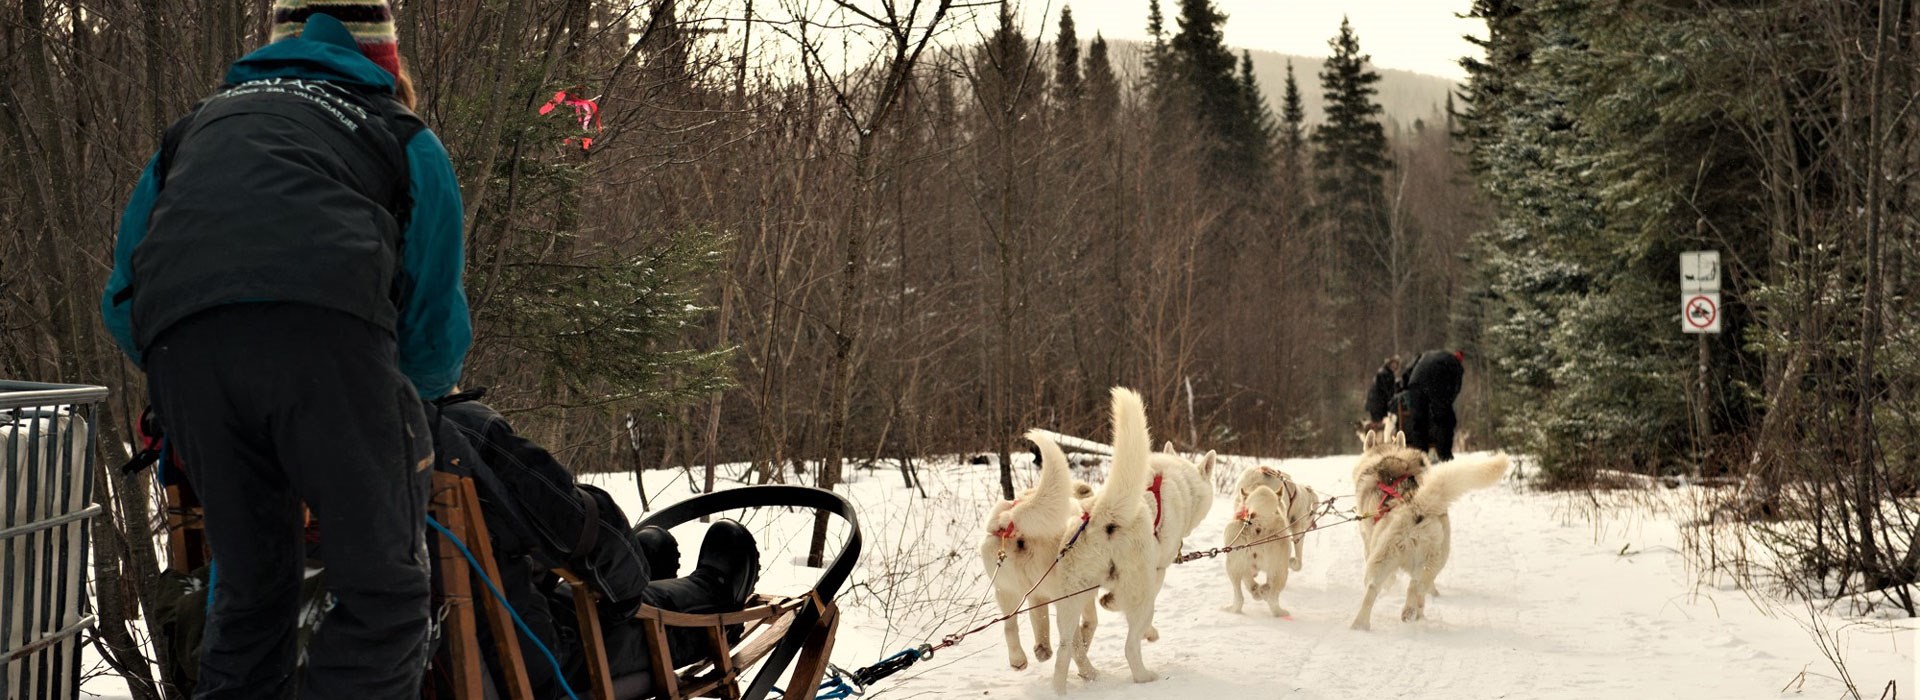 Visiter Le Quebec en traîneau à chiens - Canada